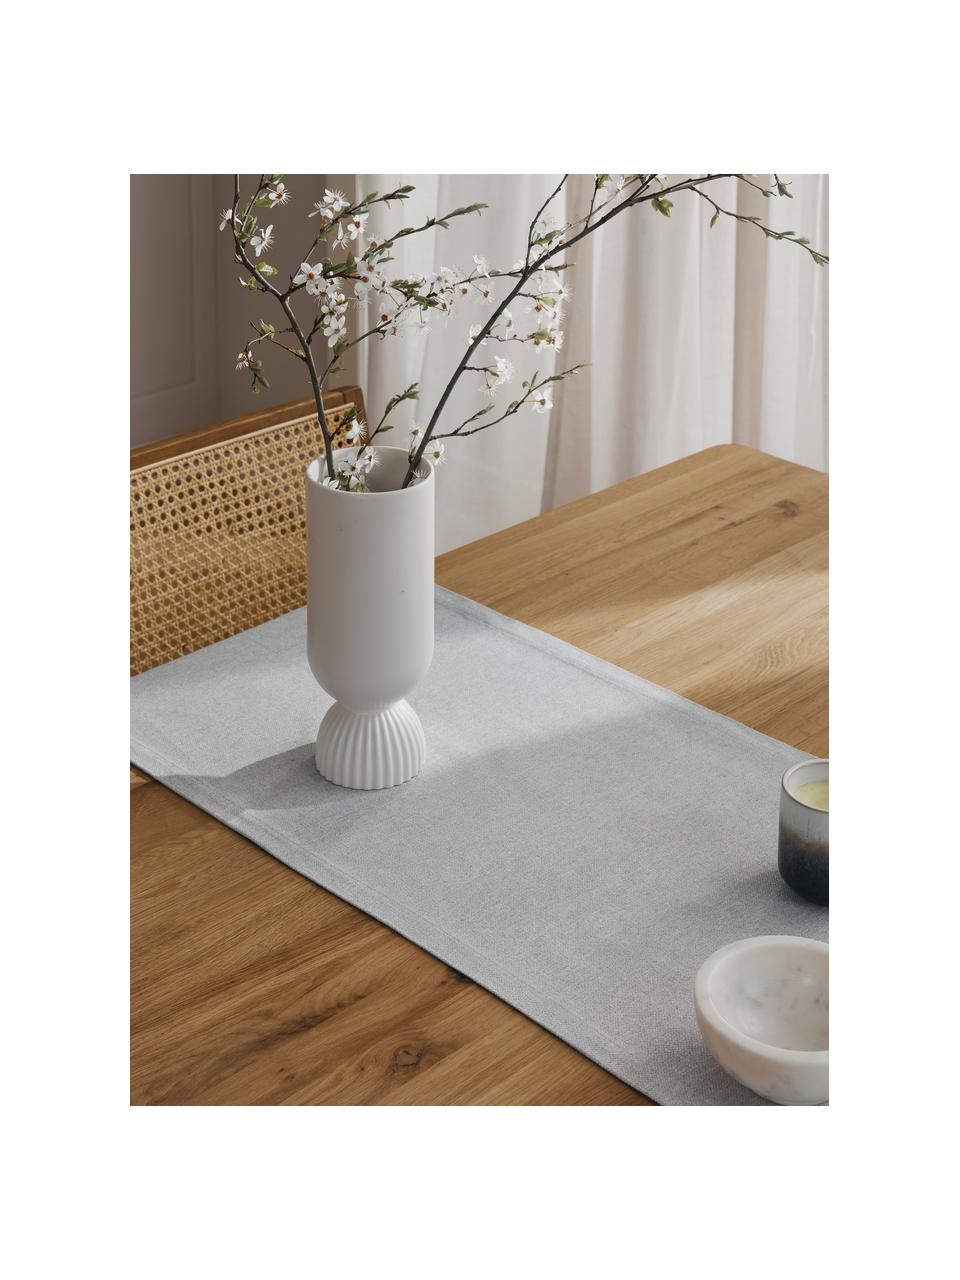 Tischläufer Riva aus Baumwollgemisch in Grau, 55% Baumwolle, 45% Polyester, Grau, B 40 x L 150 cm